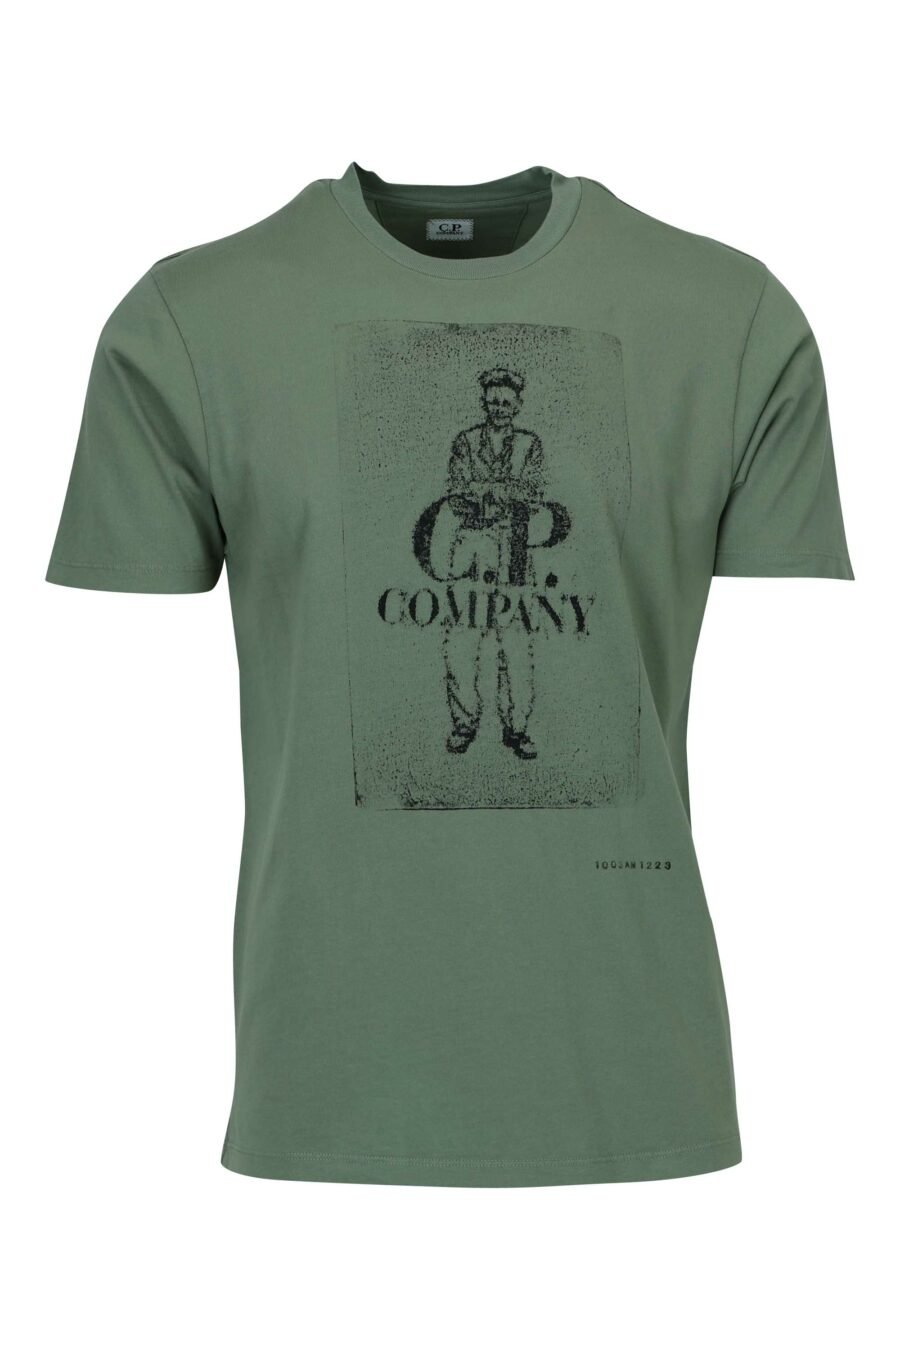 T-shirt gris-vert avec maxilogue marin et logo "cp" - 7620943776539